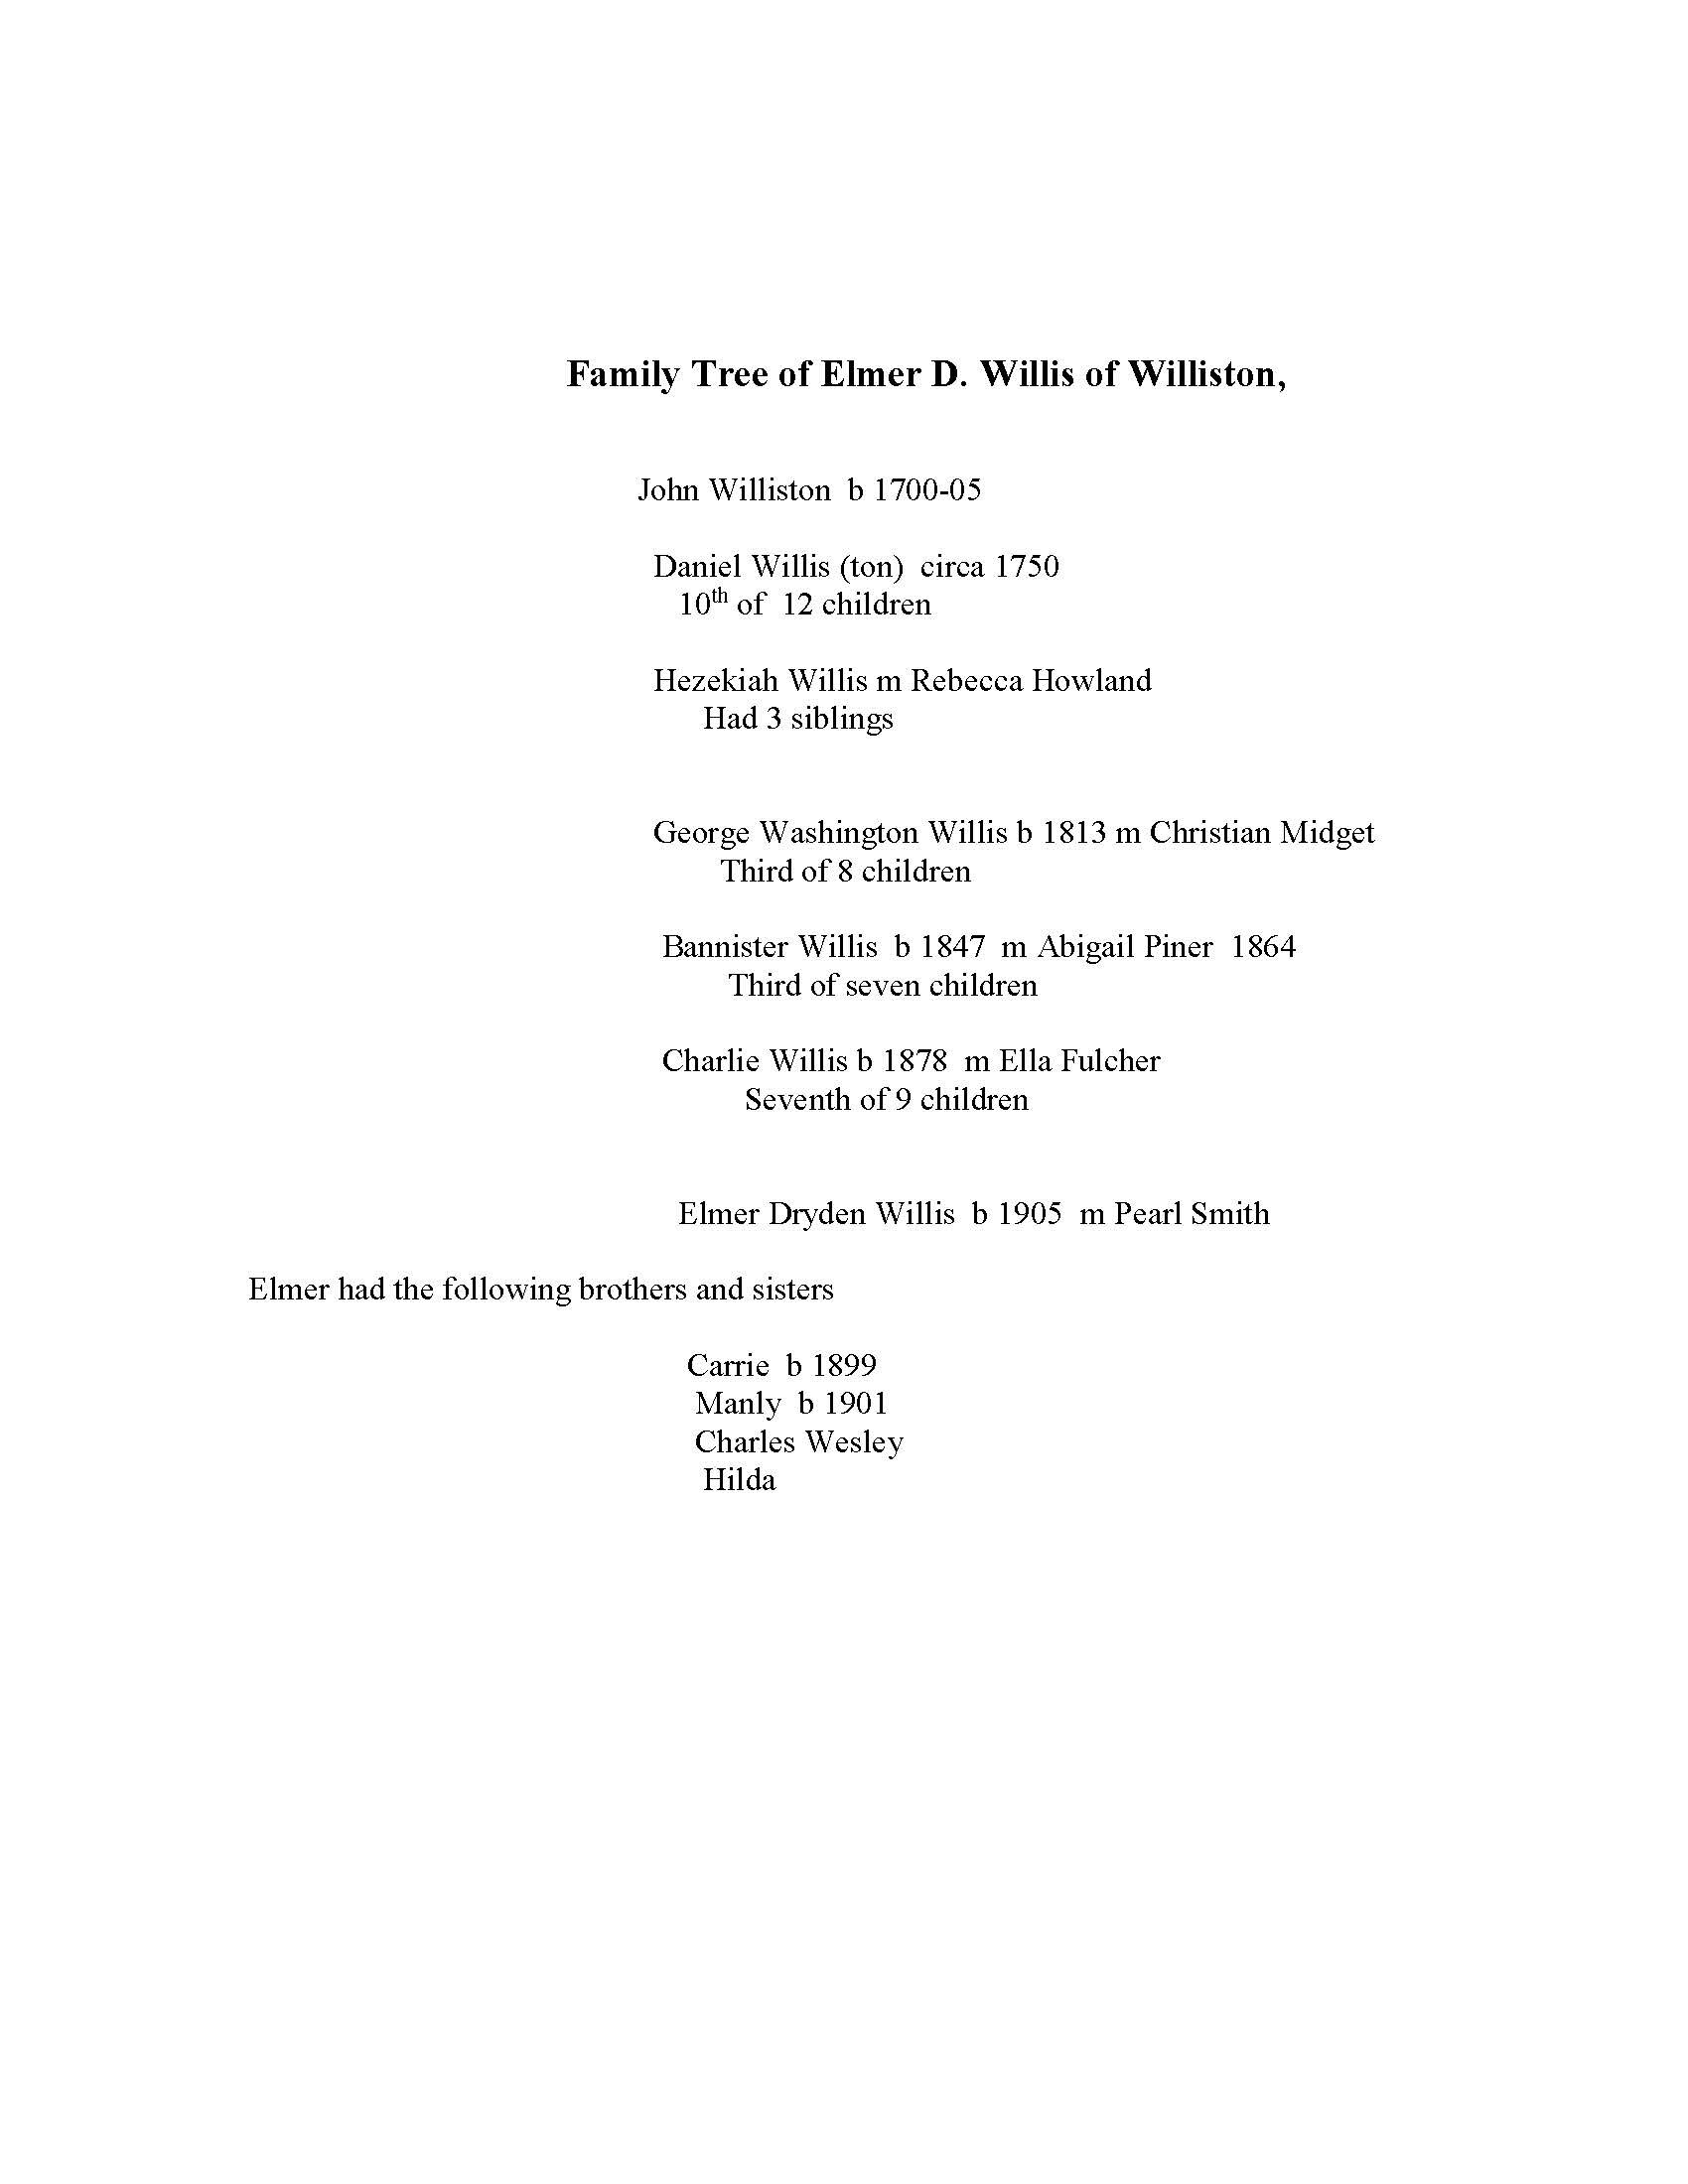 Family Tree of Elmer D Willis.jpg